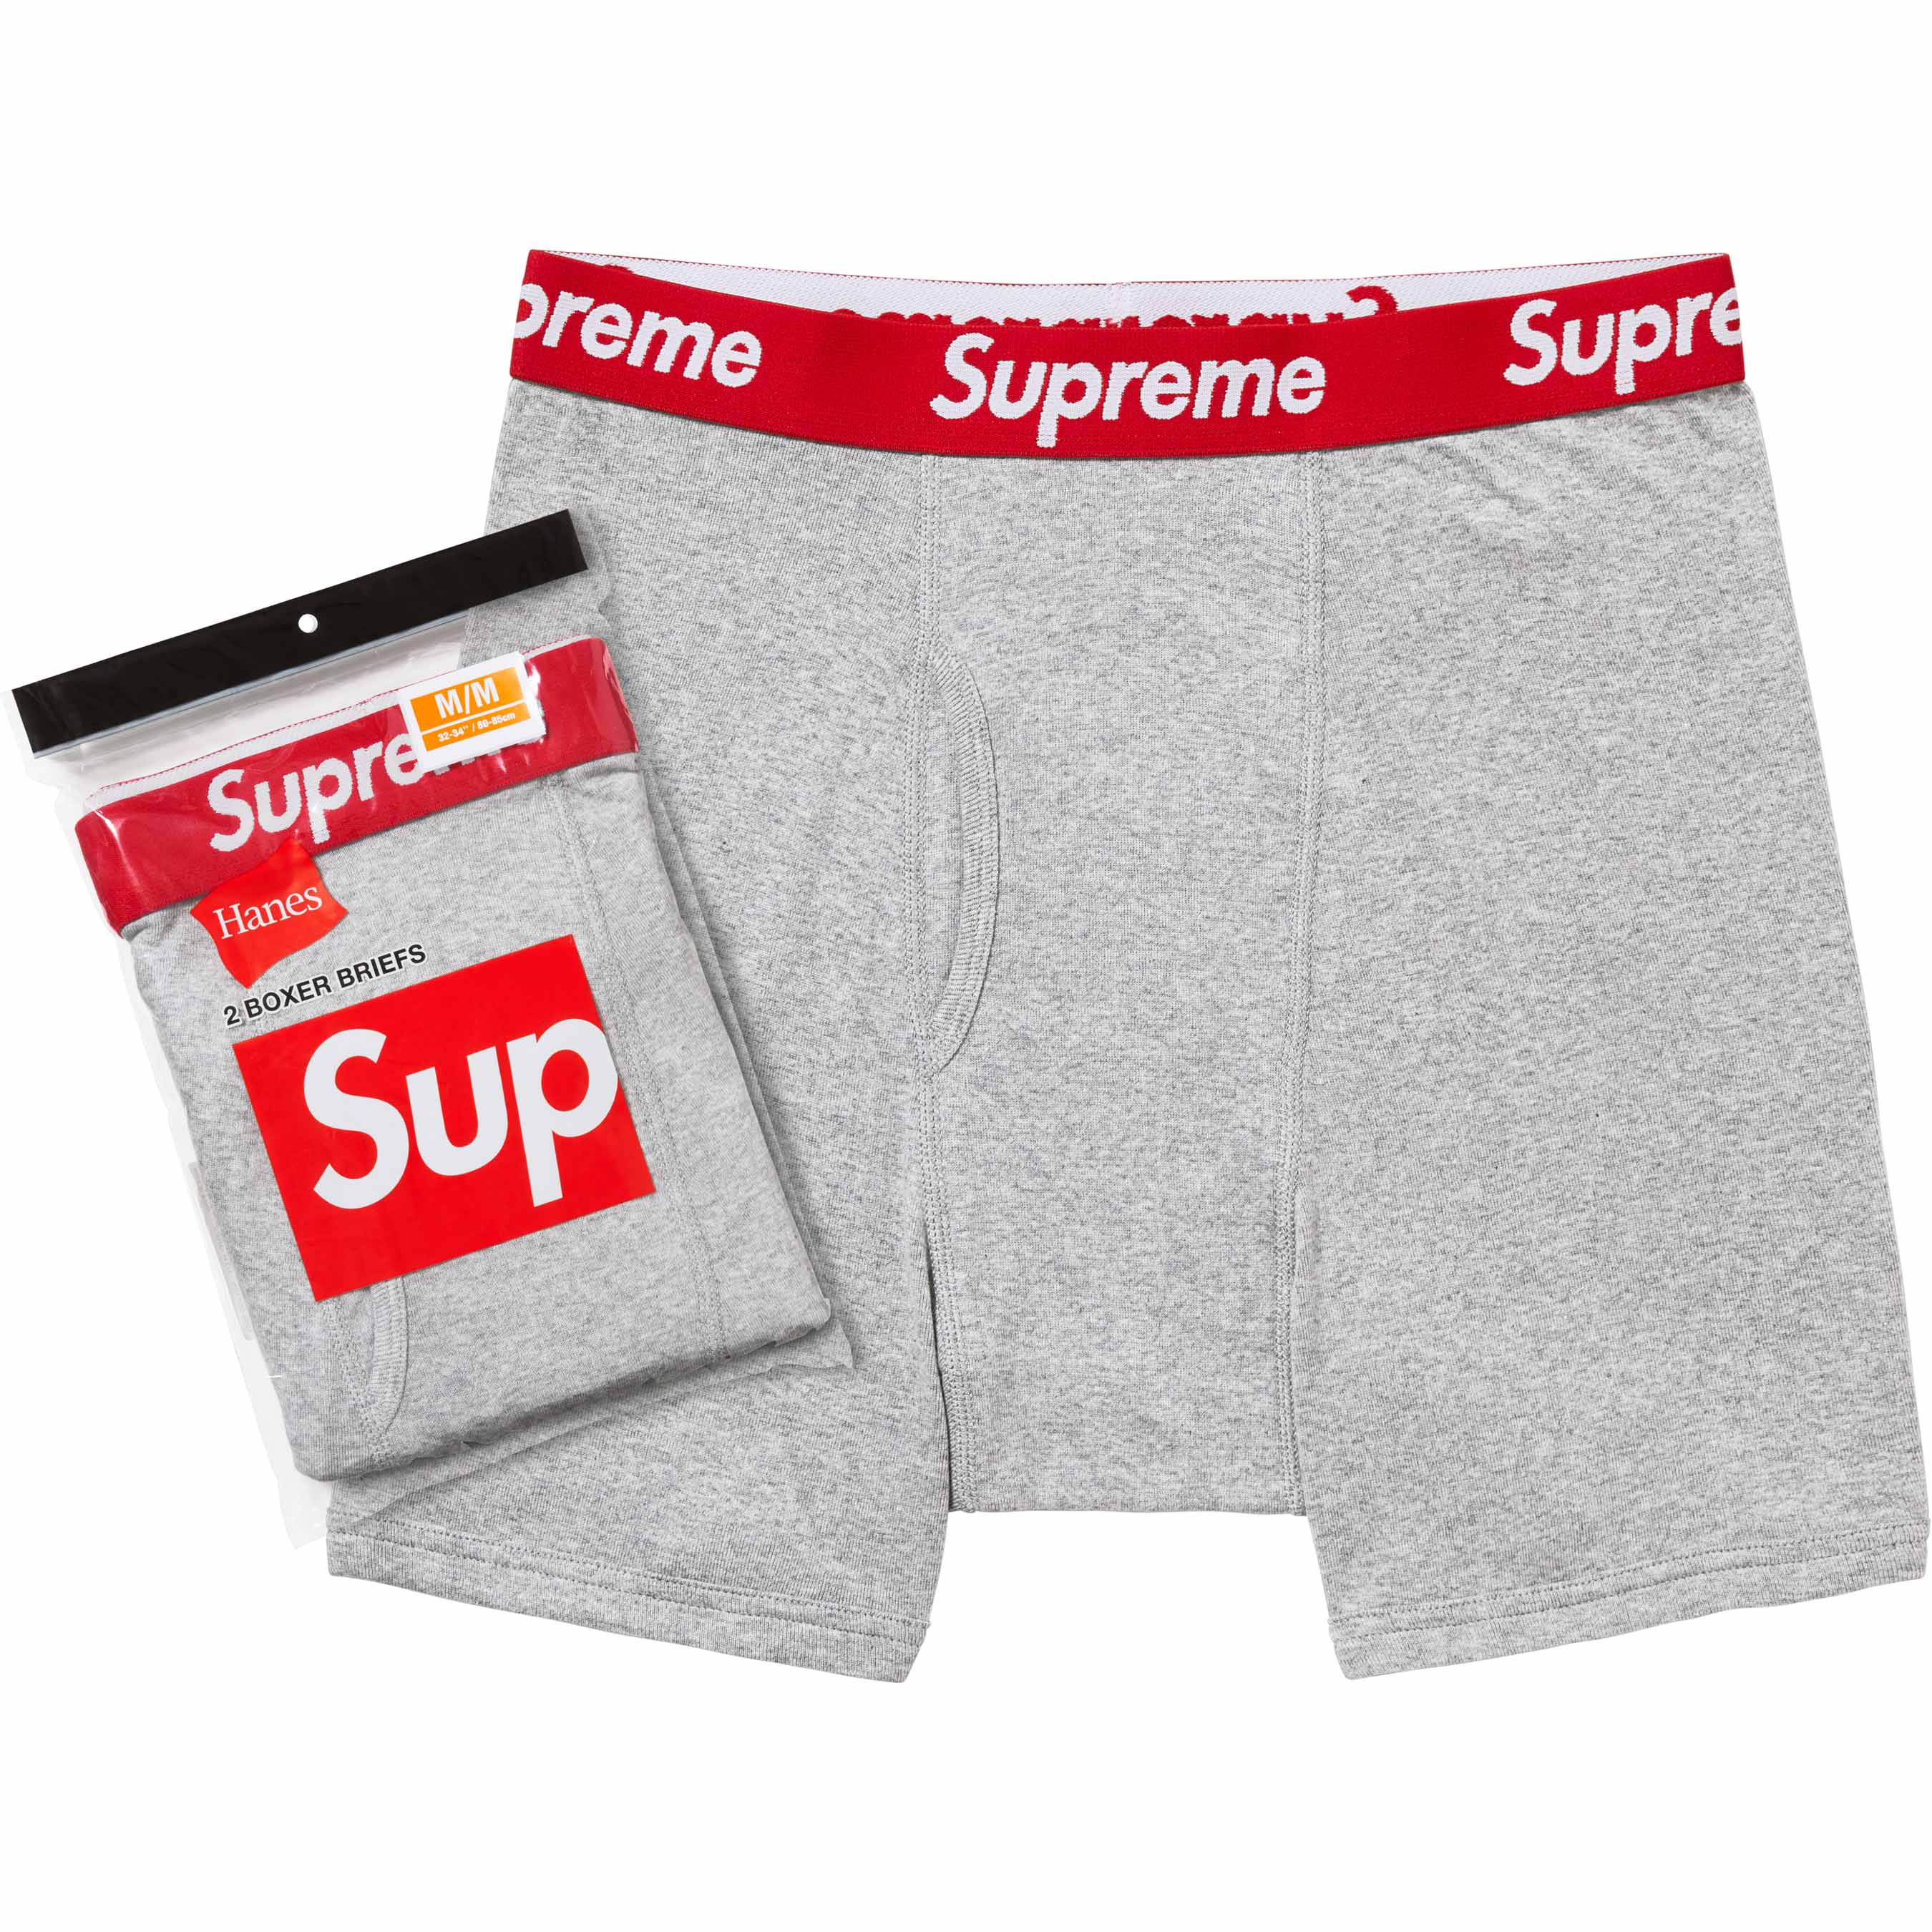 Shop Underwear Supreme online